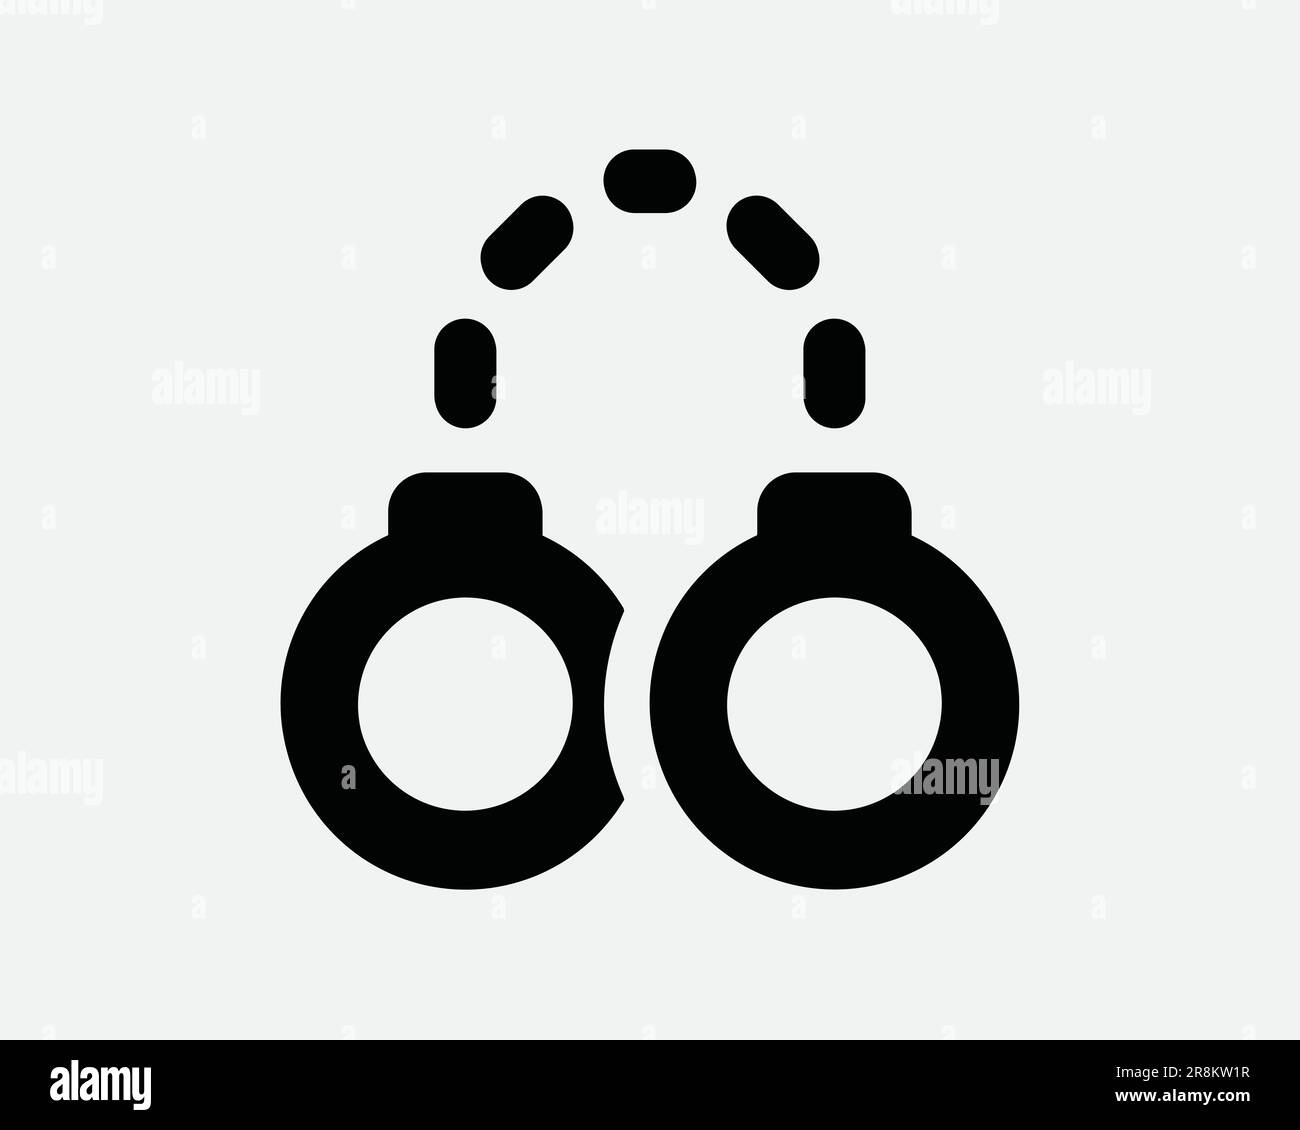 Icona della catena del bracciale a mano. Manette Lock Tie criminalità forze dell'ordine Bondage Slave sicurezza. Simbolo del segno bianco nero Illustrazione Illustrazione Clipart vettore EPS Illustrazione Vettoriale